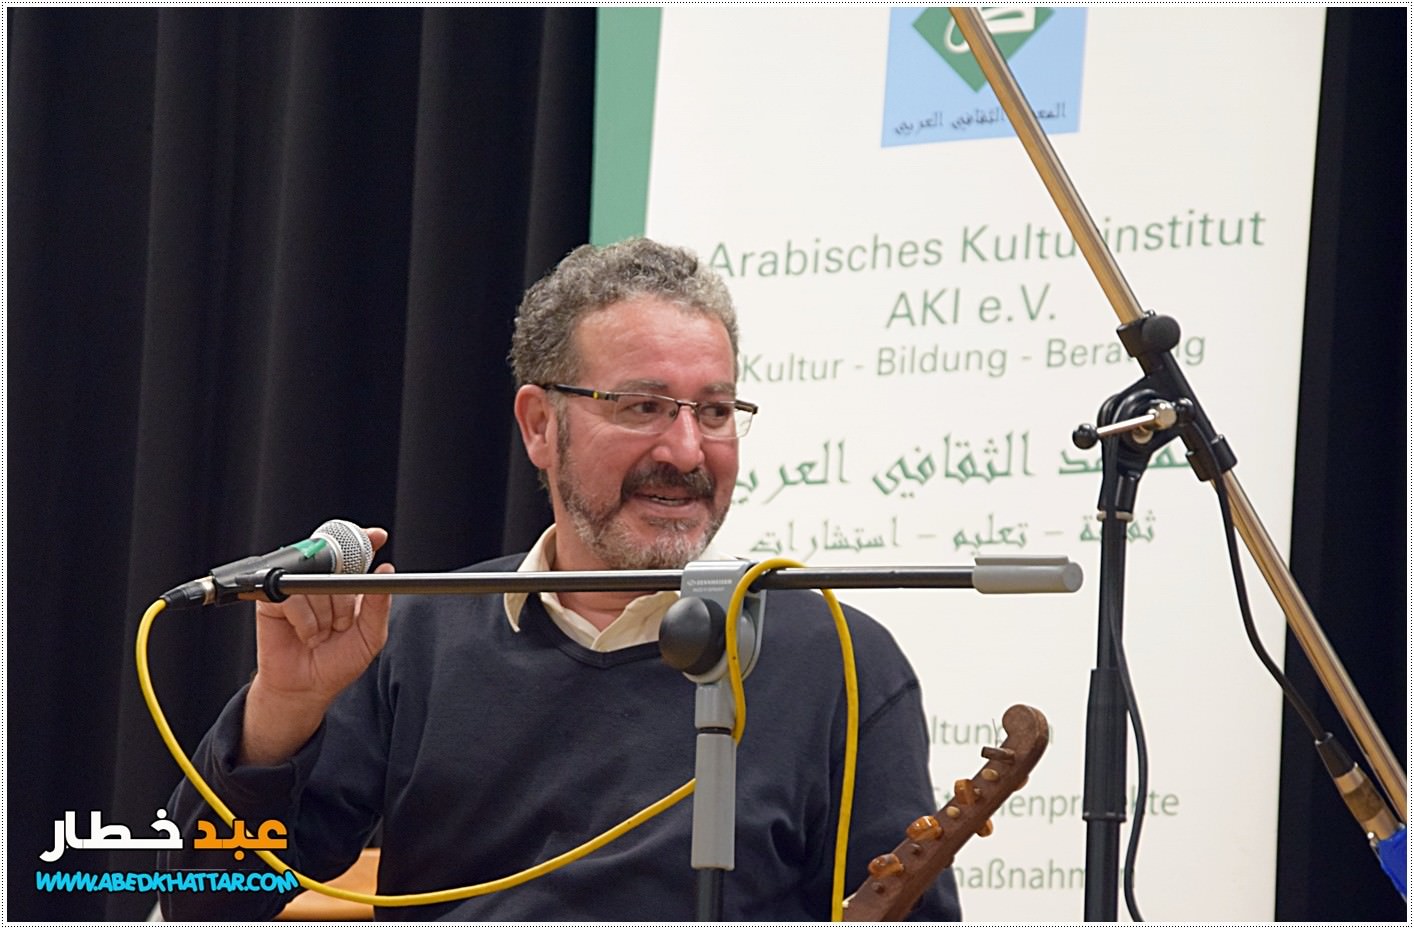 المعهد الثقافي العربي في برلين يحتفل بعيد الأضحى المبارك تحت شعار: نفرح بالعيد، نفرح بالسلام، نفرح بالحرية